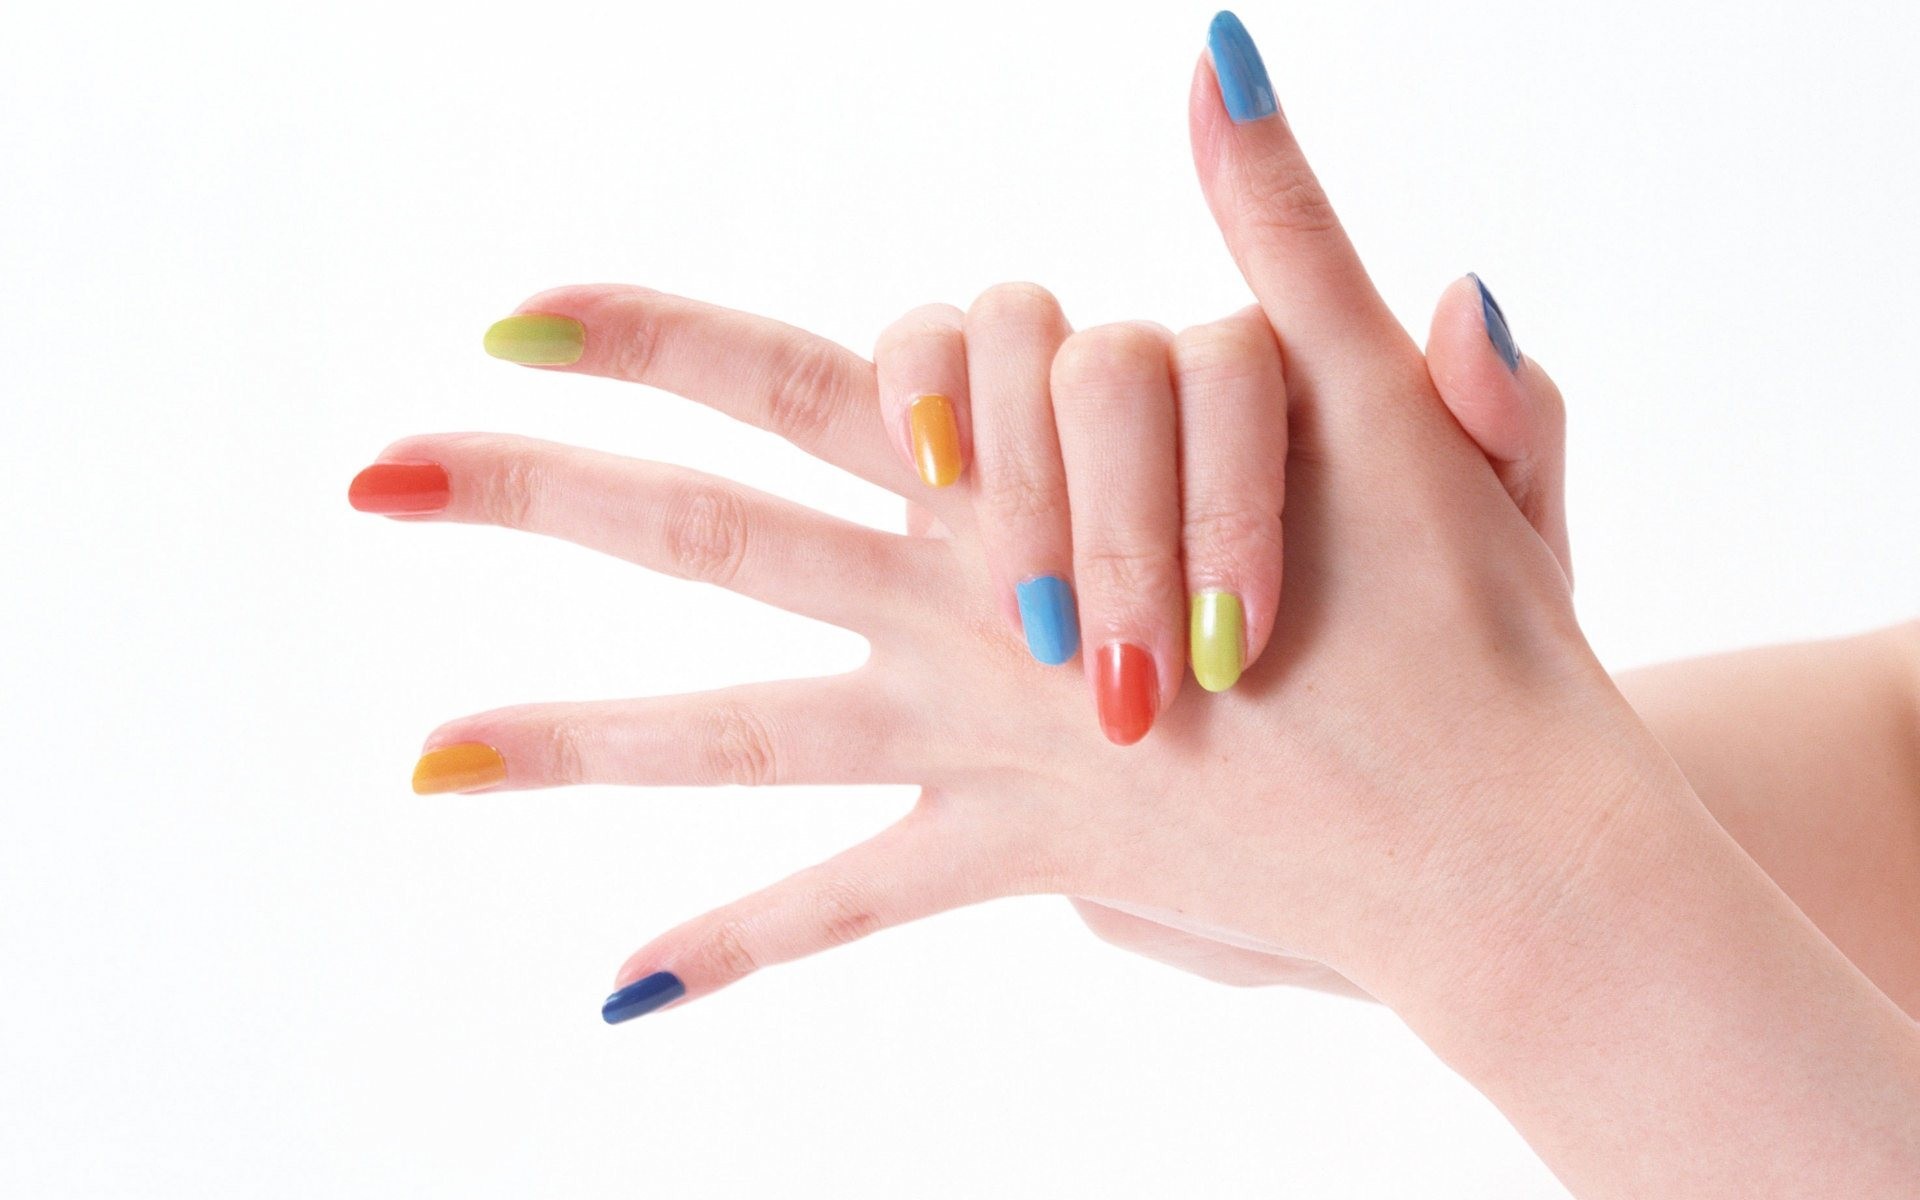 nail art wallpaper,nail polish,nail,manicure,nail care,cosmetics (#581525)  - WallpaperUse